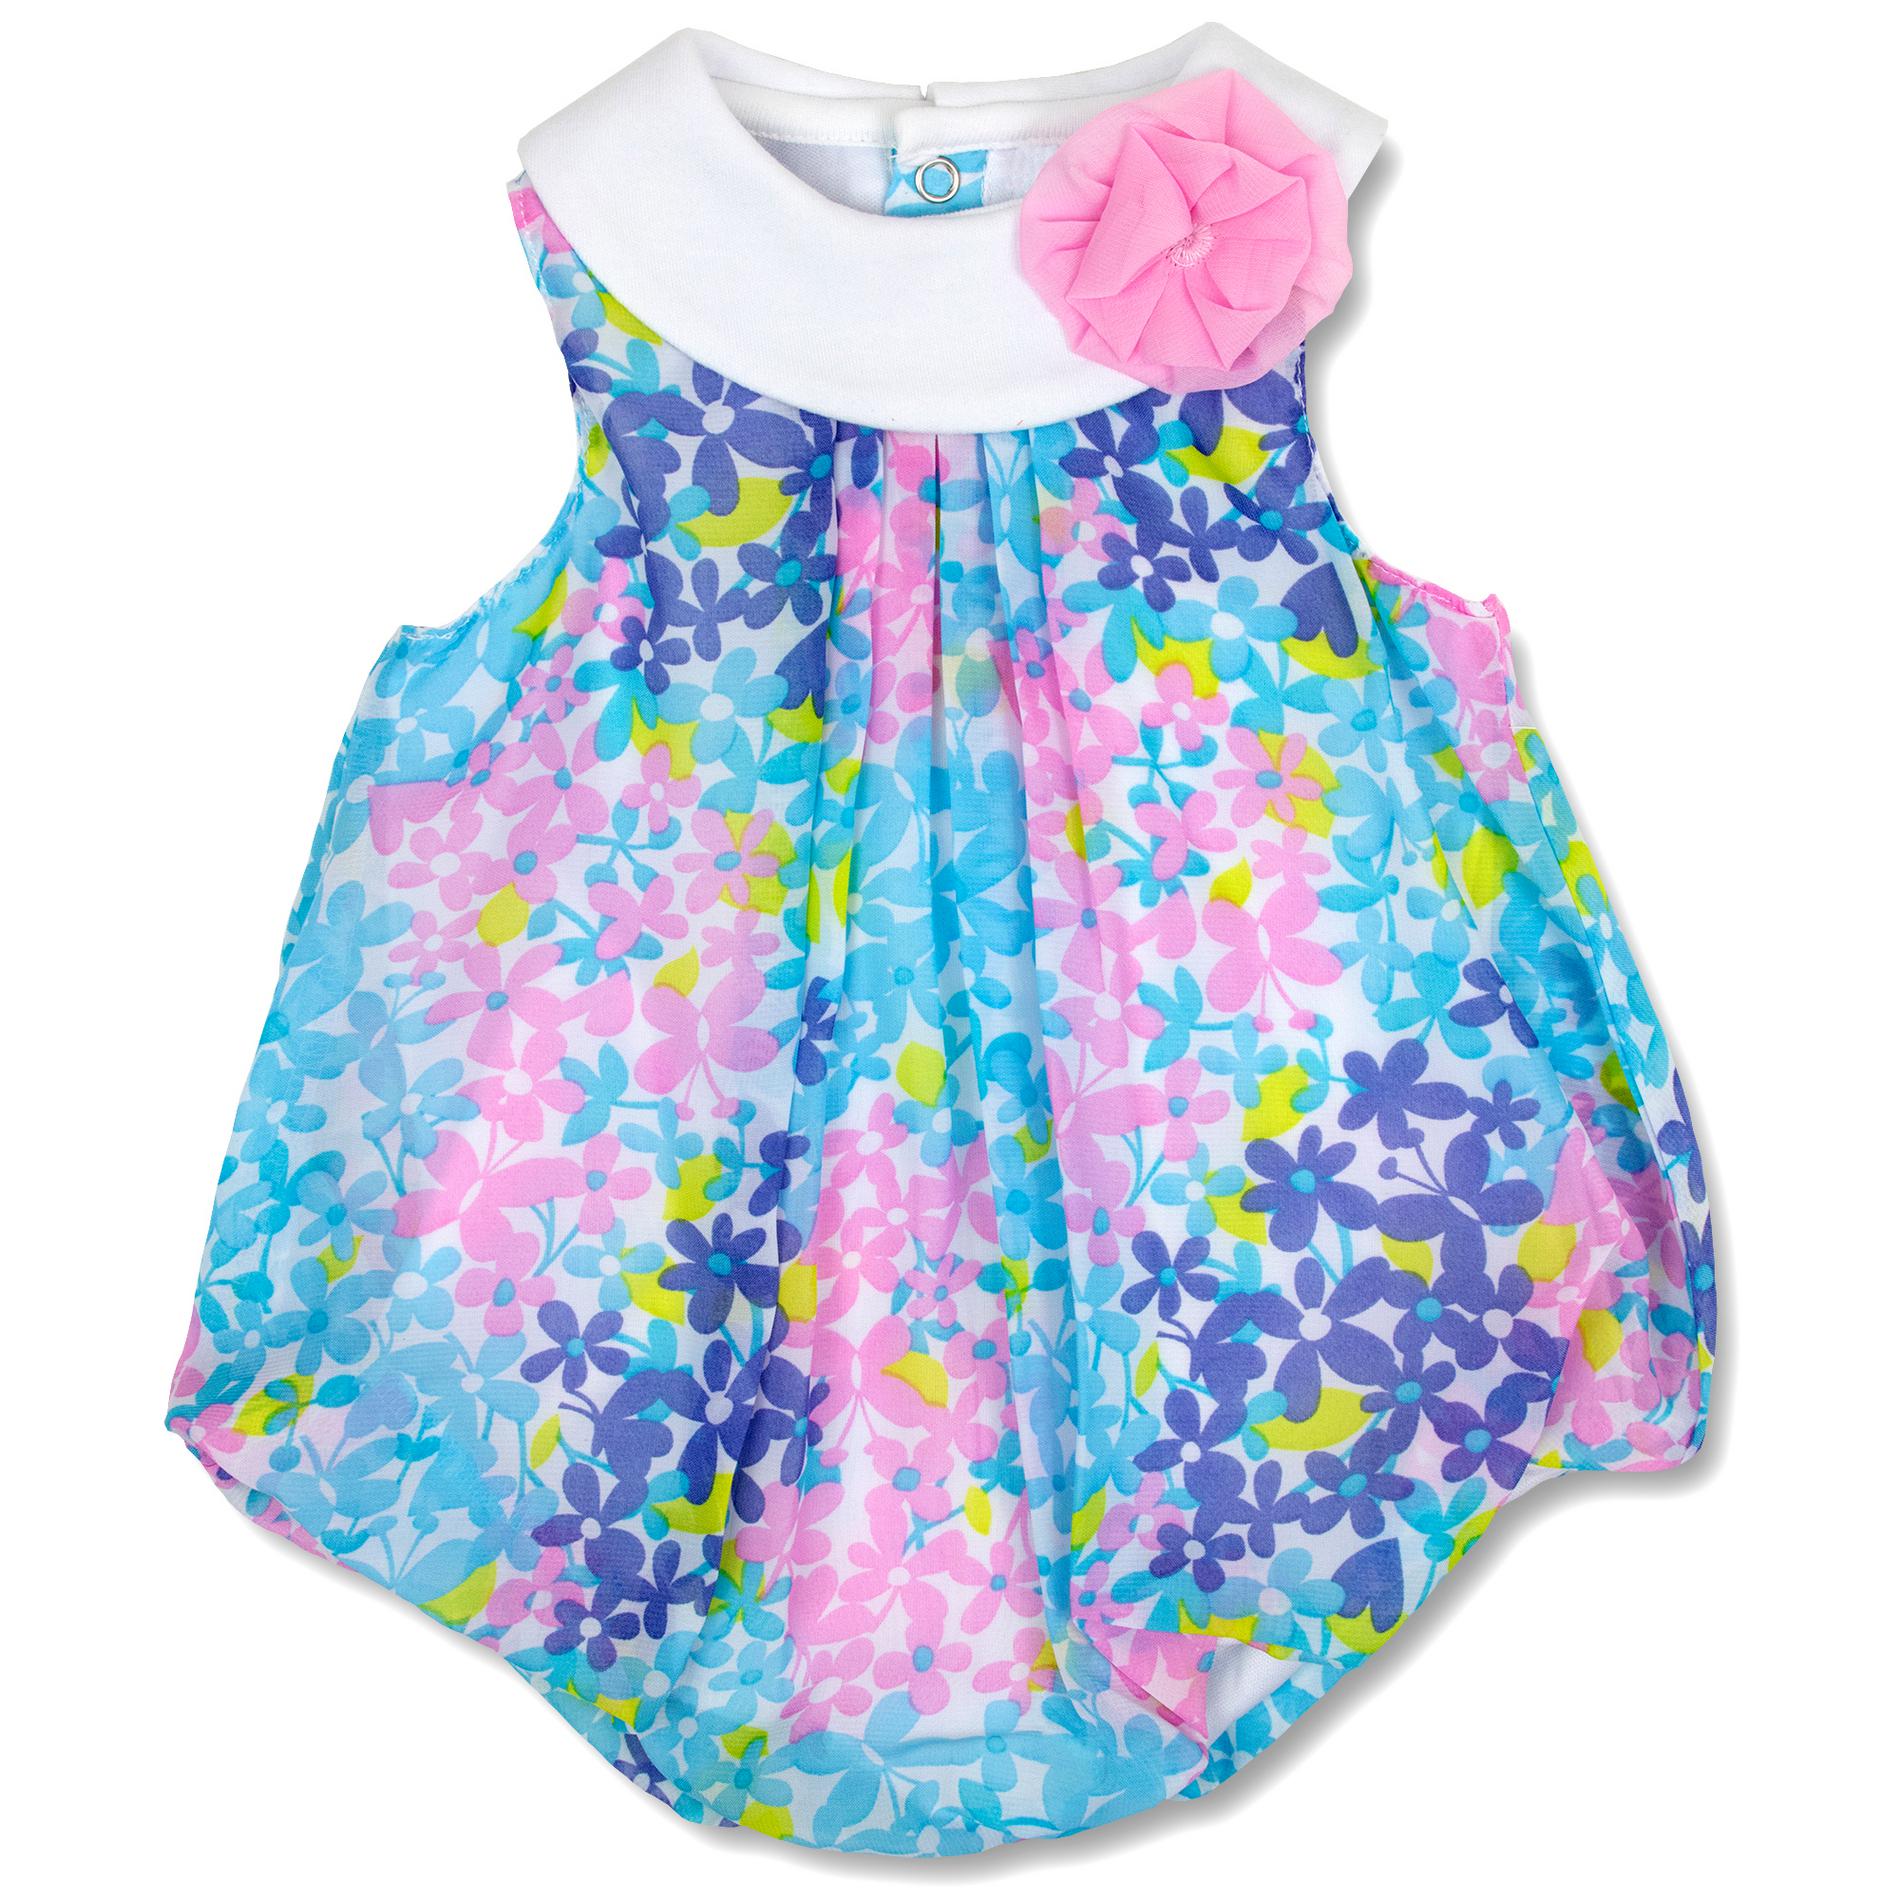 Baby Essentials Newborn Girls' Bubble Romper - Floral